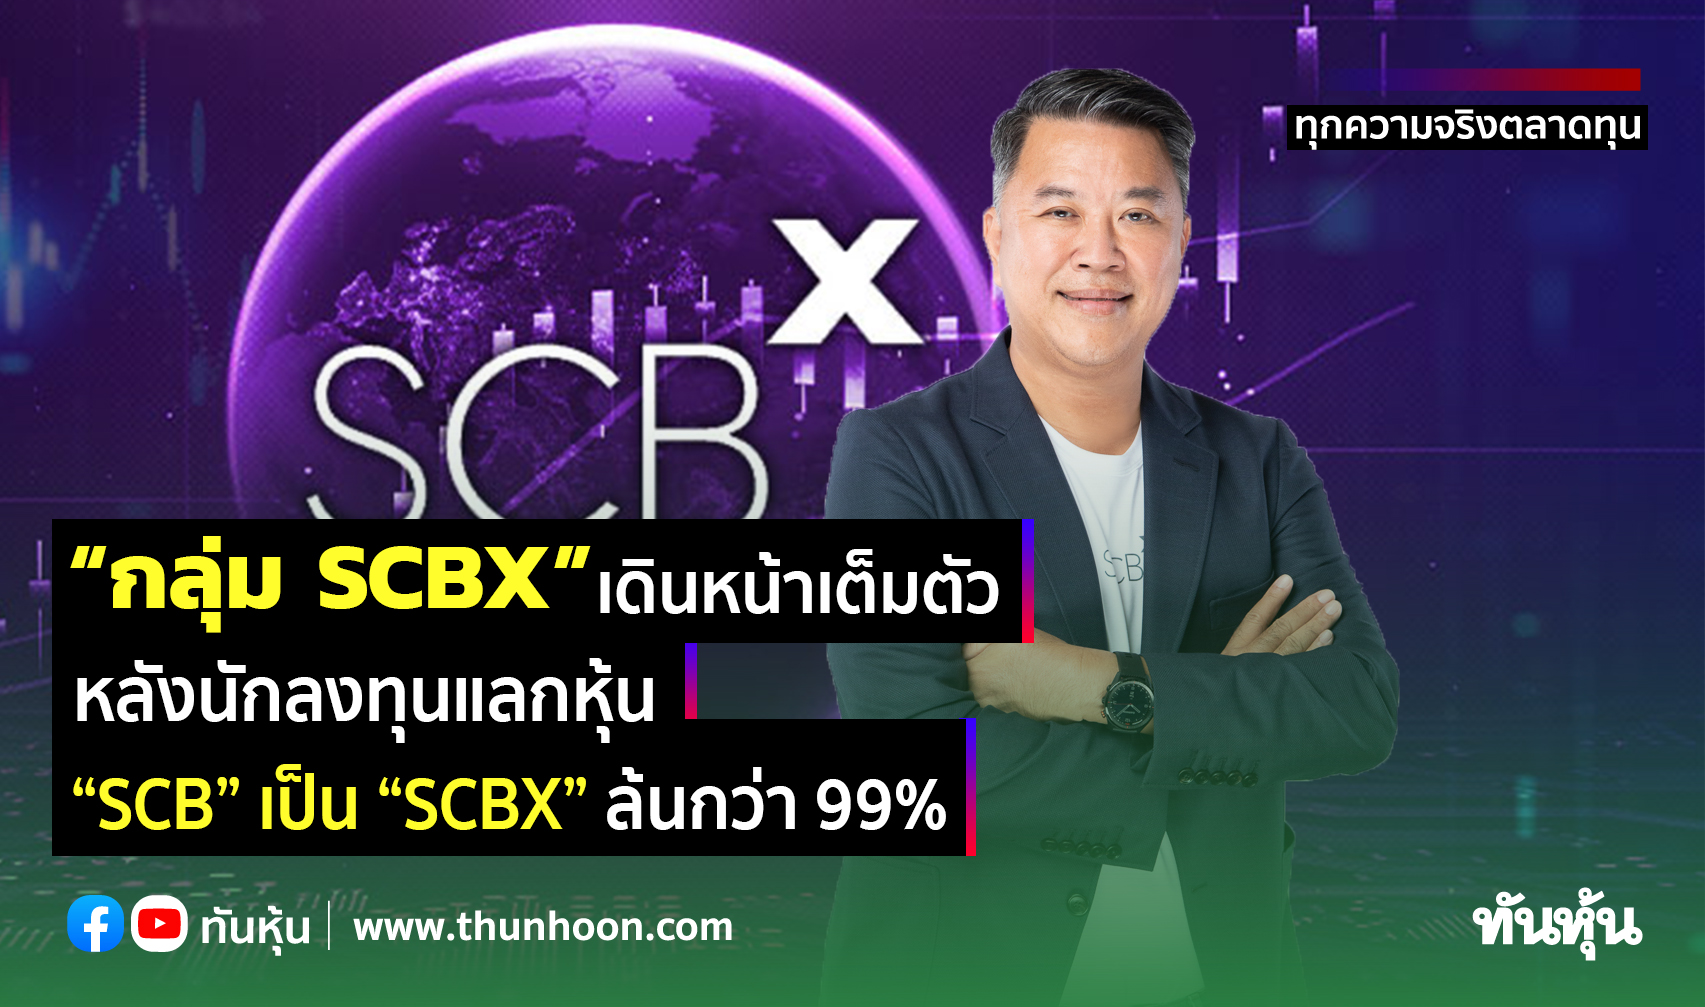 “กลุ่ม SCBX” เดินหน้าเต็มตัว หลังนักลงทุนแลกหุ้น “SCB” เป็น “SCBX” ล้นกว่า 99%